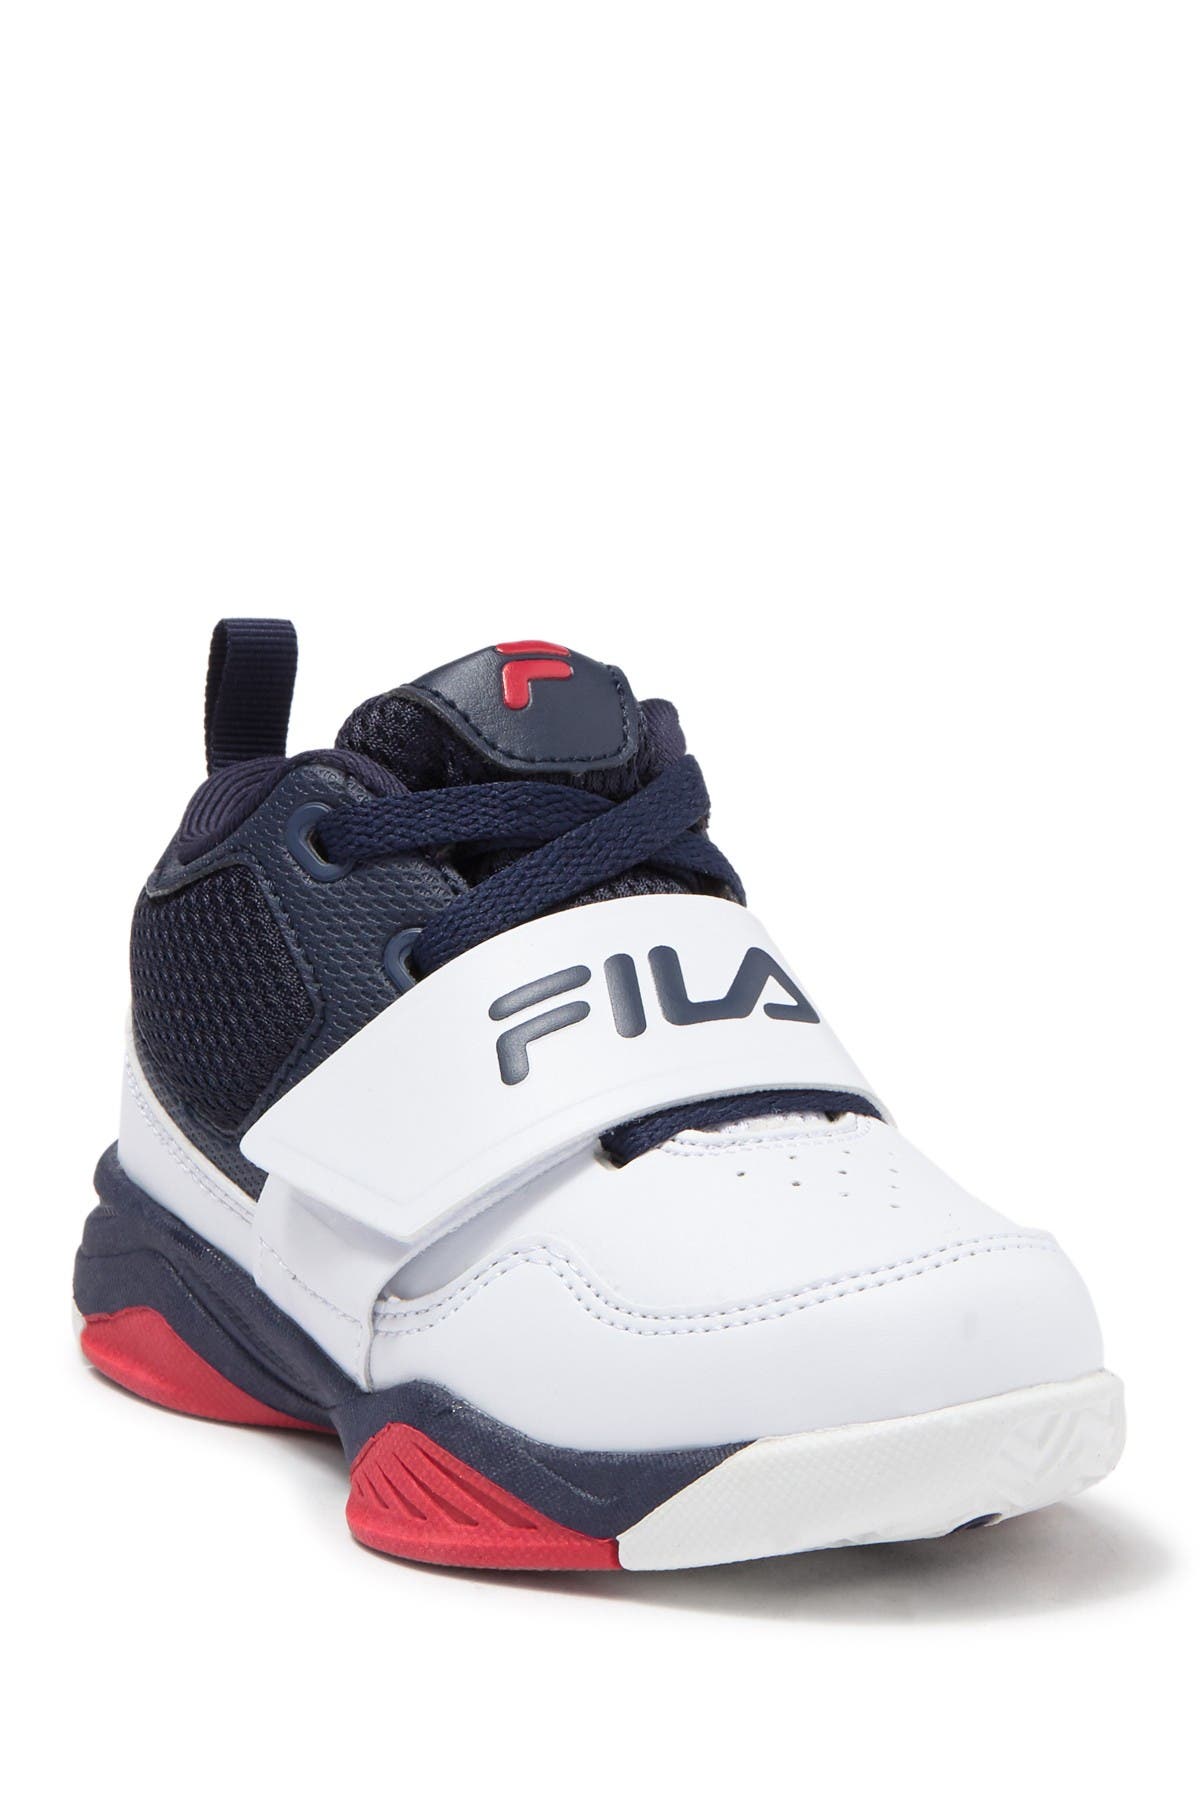 fila sneakers toddler